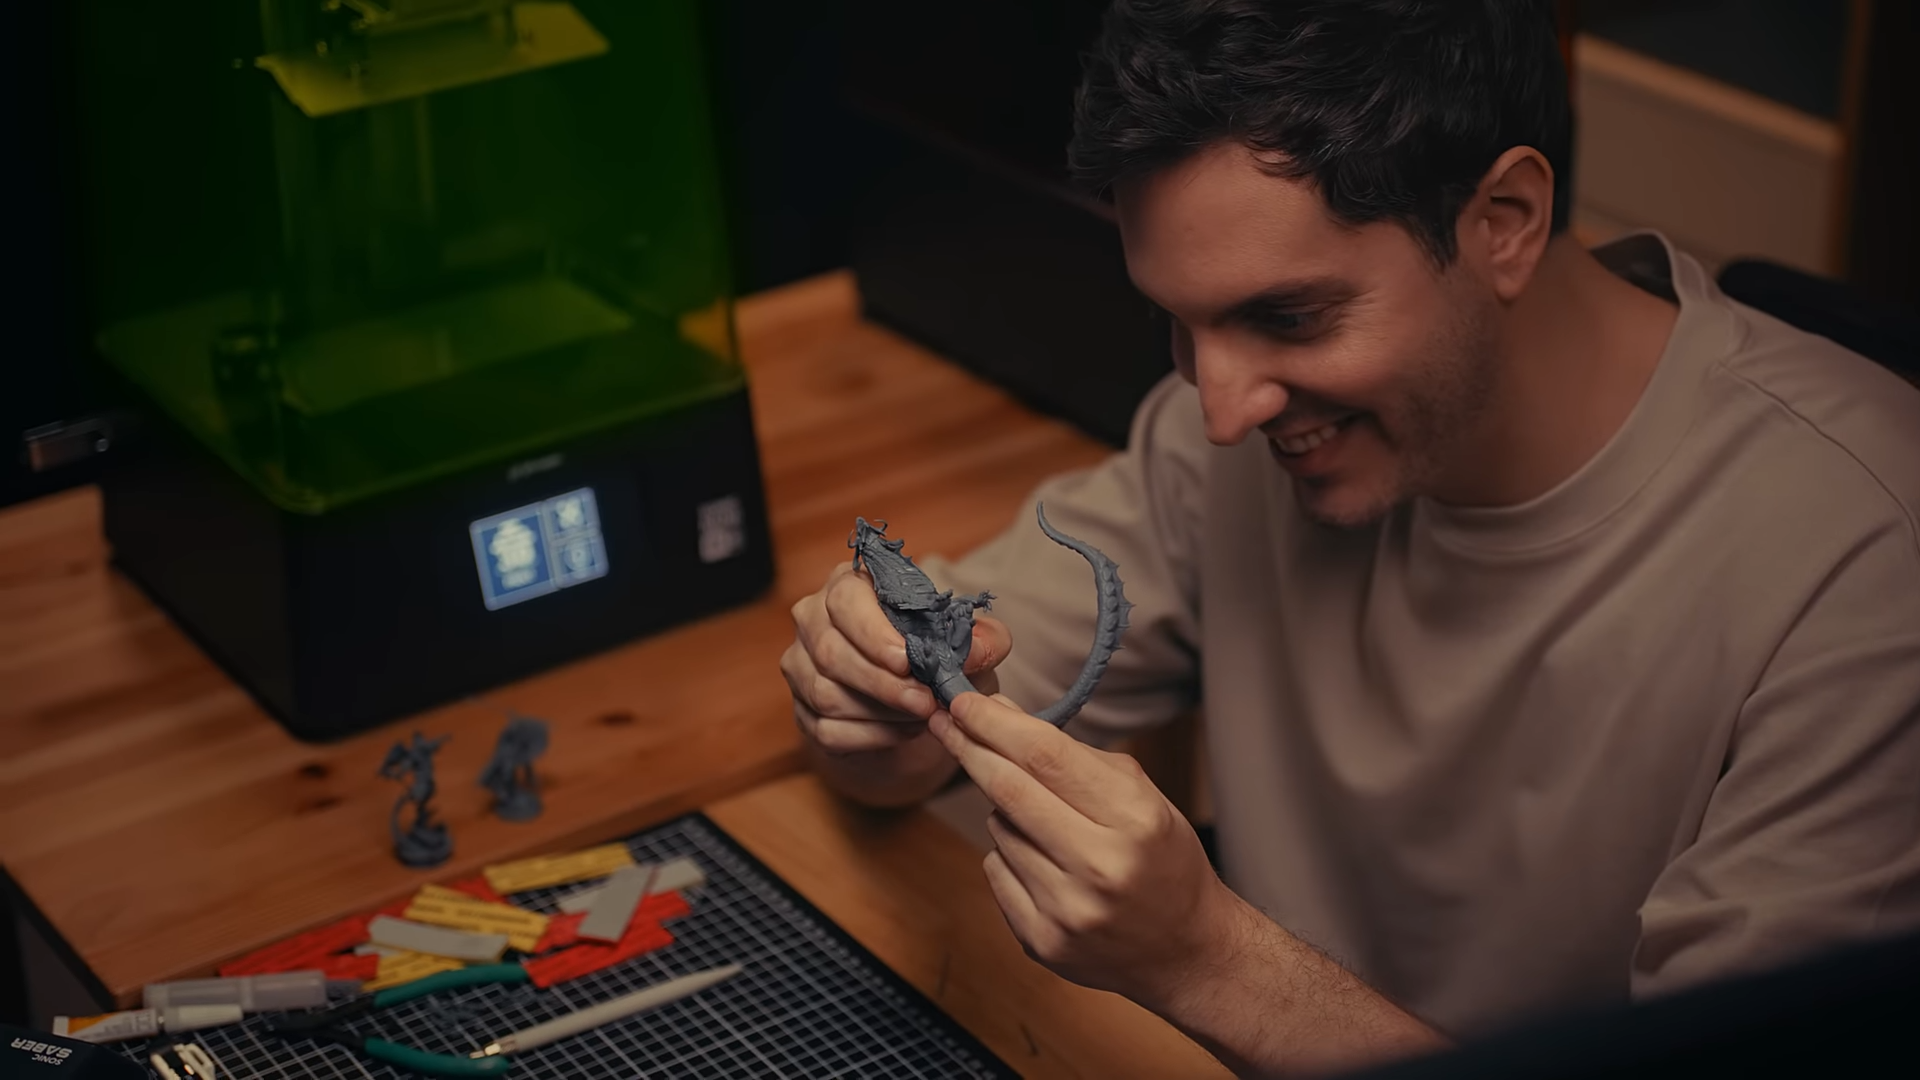 3D printing hobbies